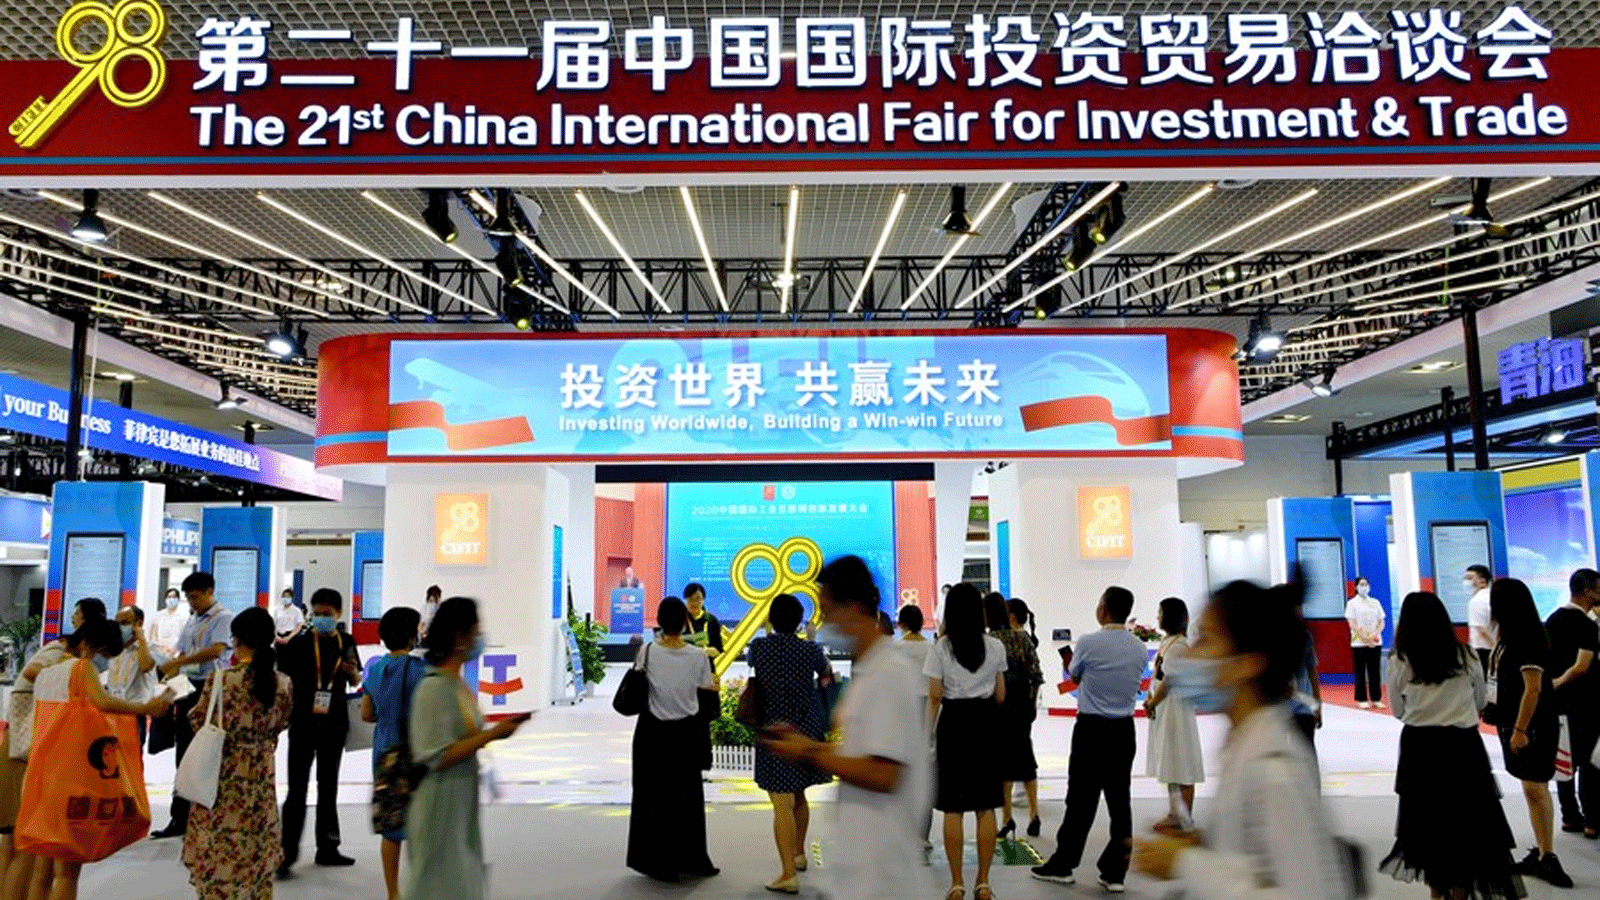 صورة التُقِطَت في 8 سبتمبر(ايلول) 2021 تُظهِر جانبًا من معرض الصين الدولي الحادي والعشرين للاستثمار والتجارة (CIFIT)